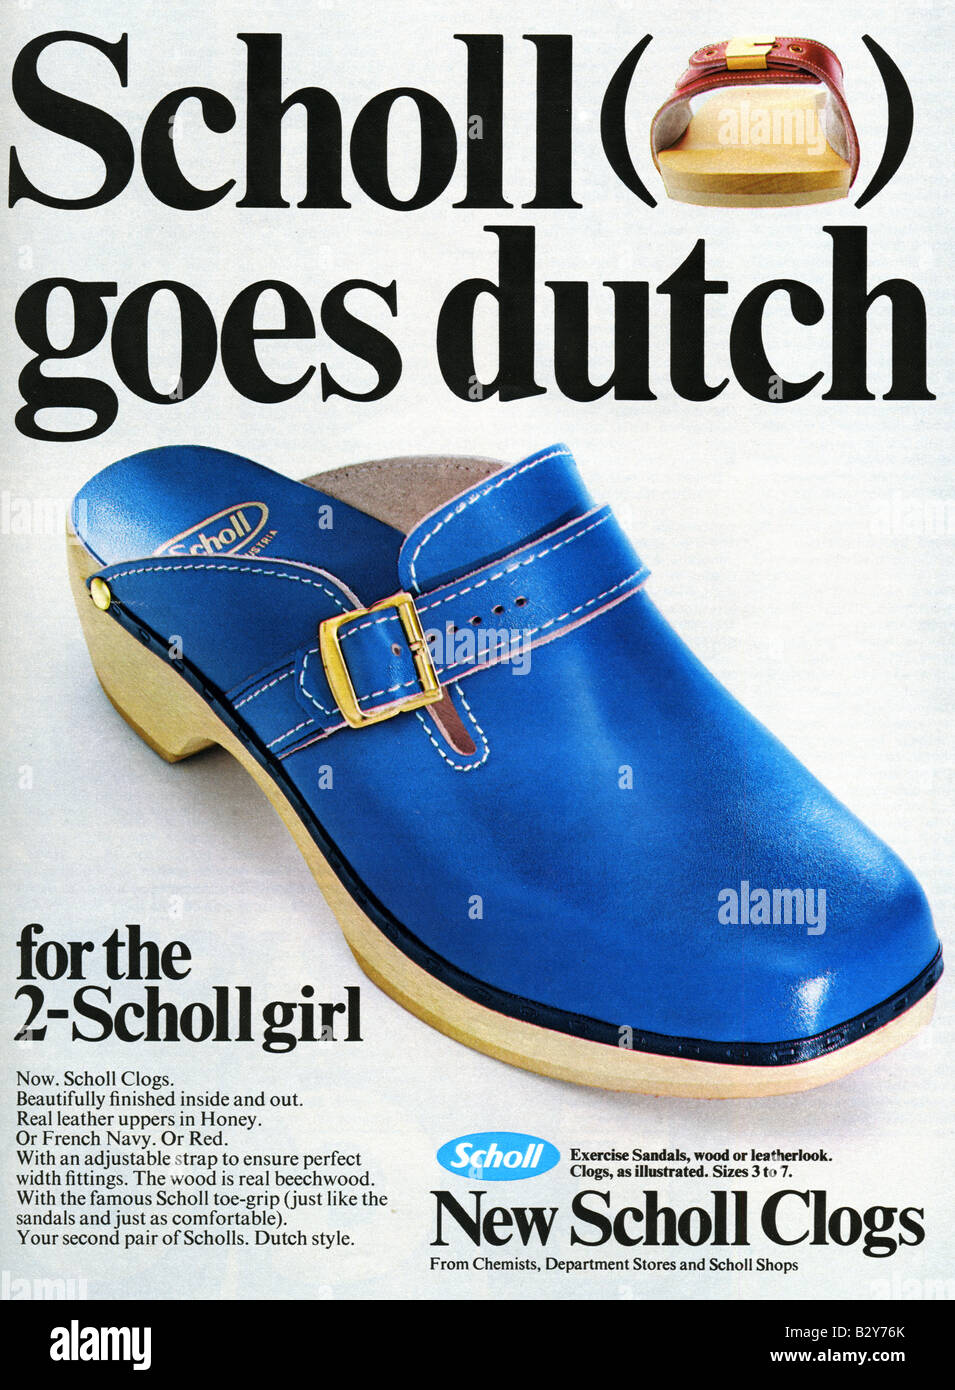 1971-Werbung für Scholl Clogs. NUR ZU REDAKTIONELLEN ZWECKEN Stockfoto